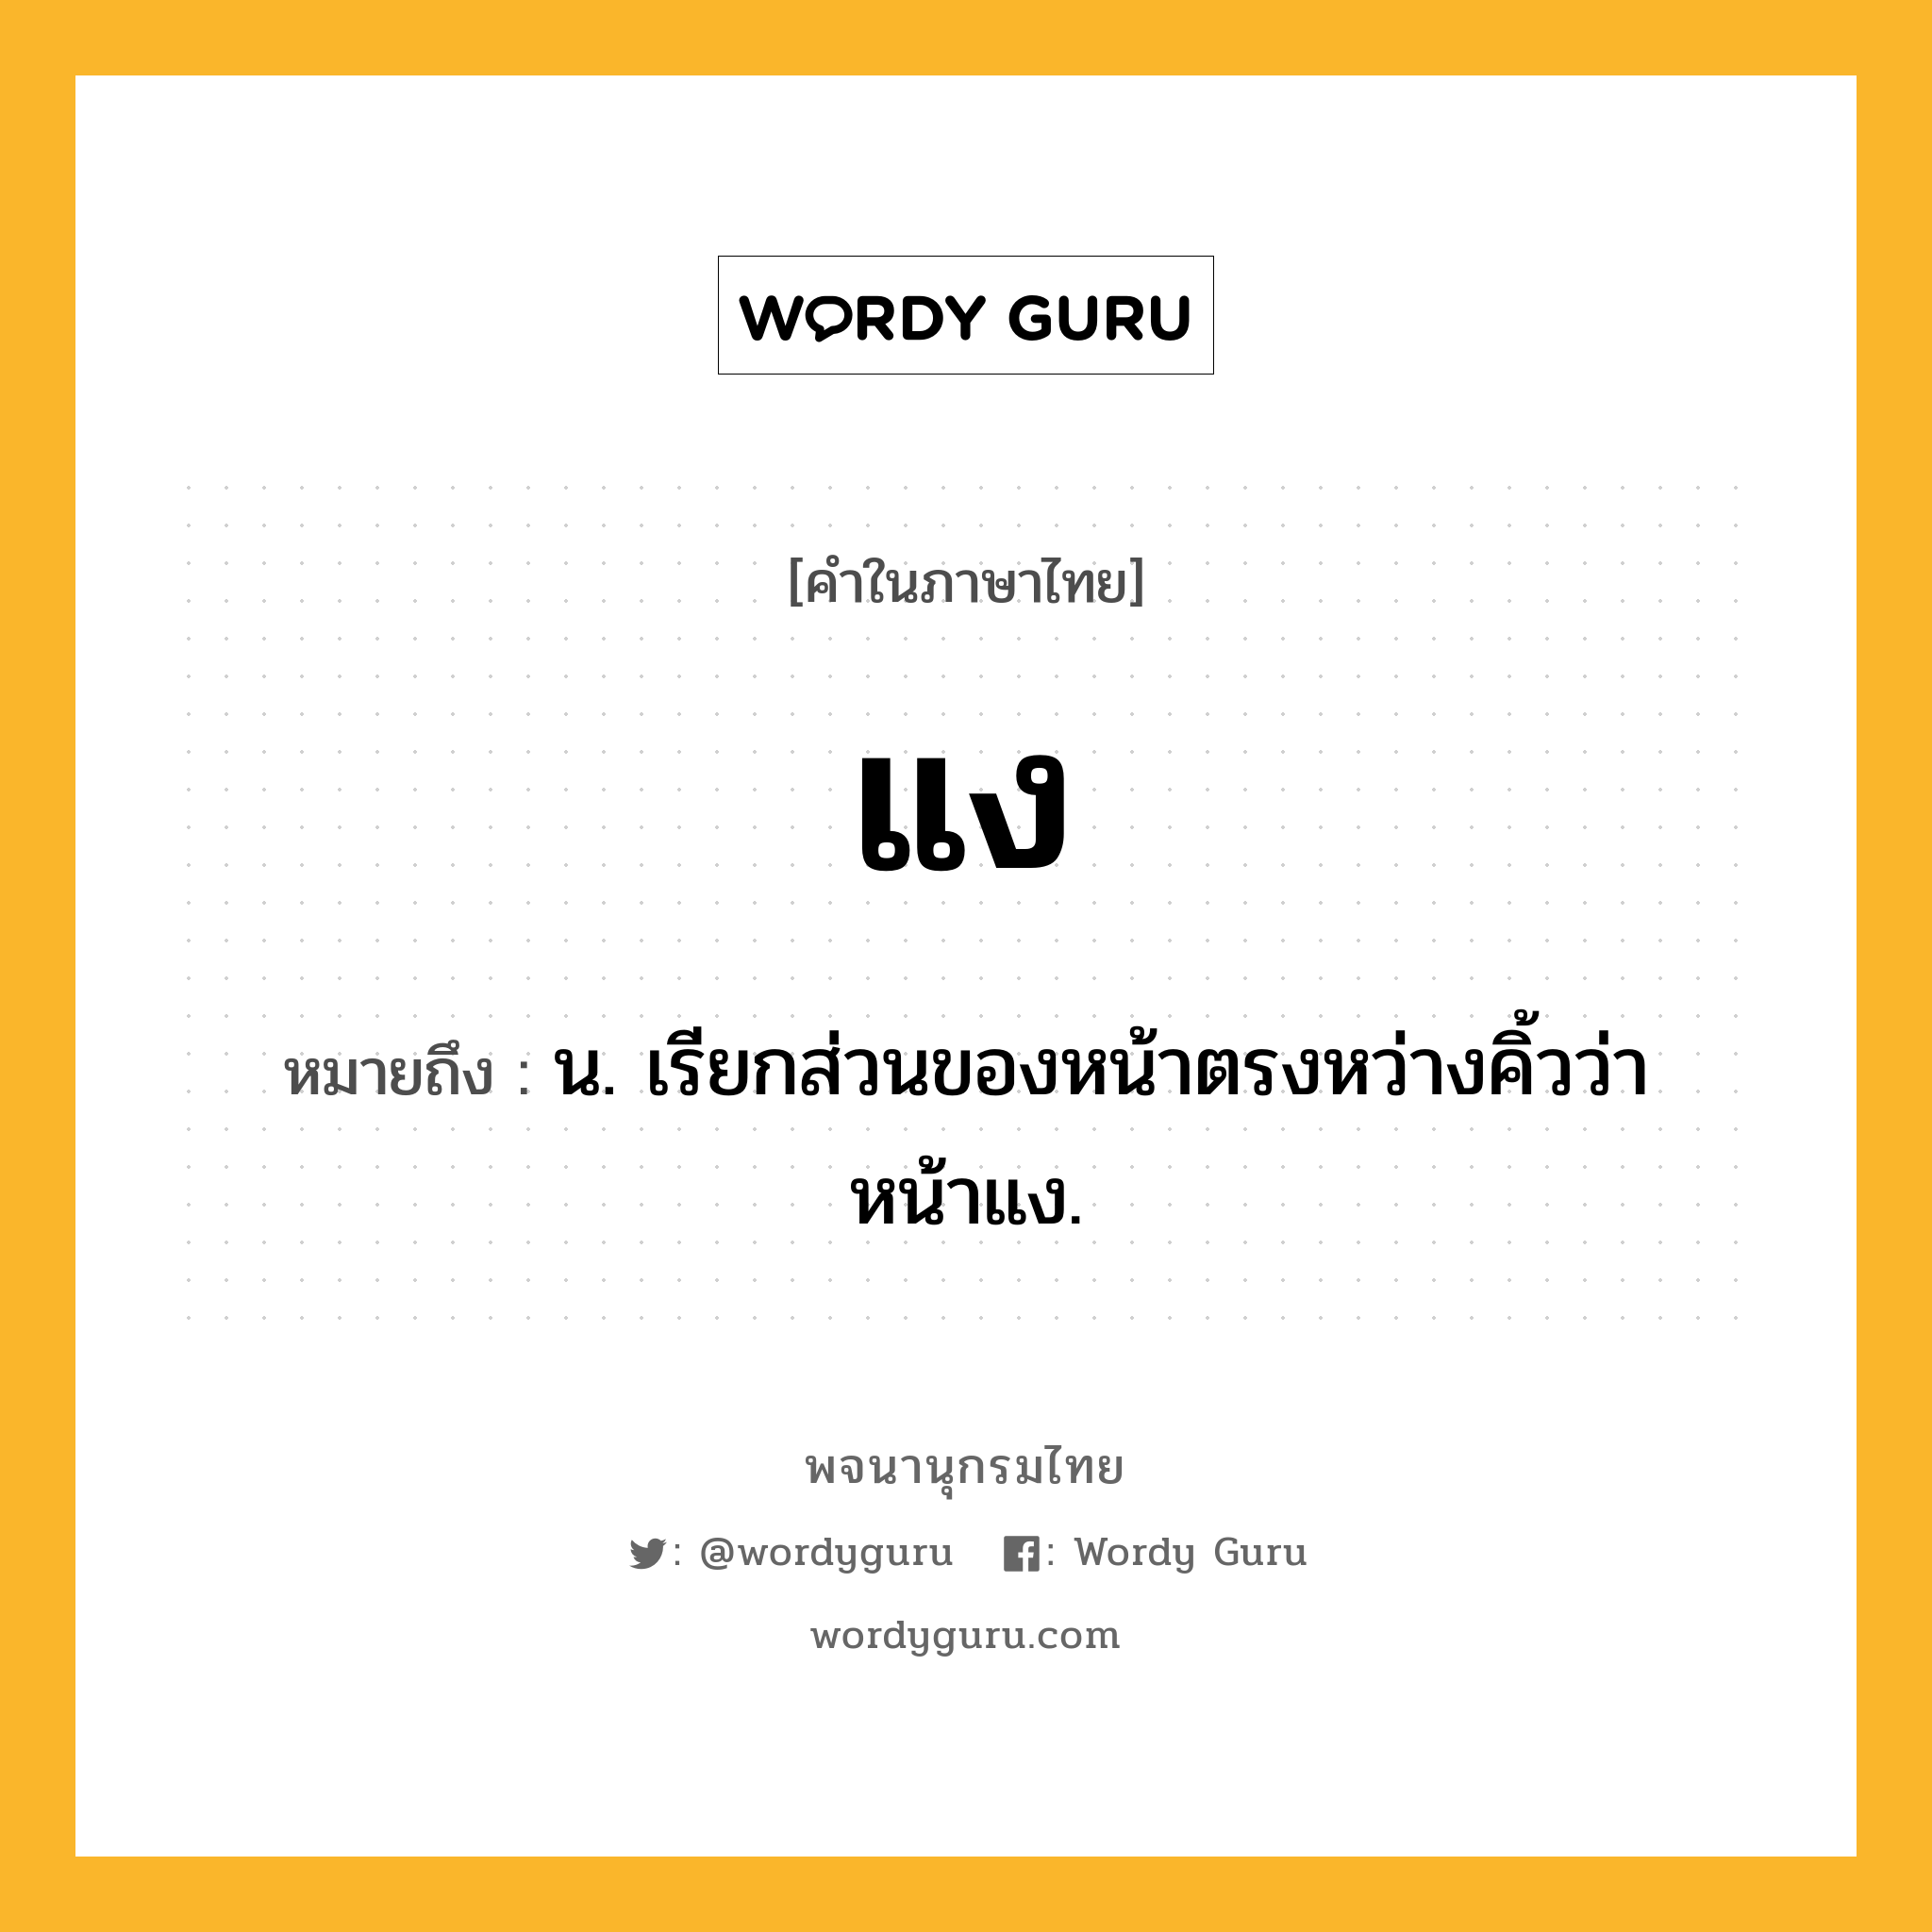 แง หมายถึงอะไร?, คำในภาษาไทย แง หมายถึง น. เรียกส่วนของหน้าตรงหว่างคิ้วว่า หน้าแง.